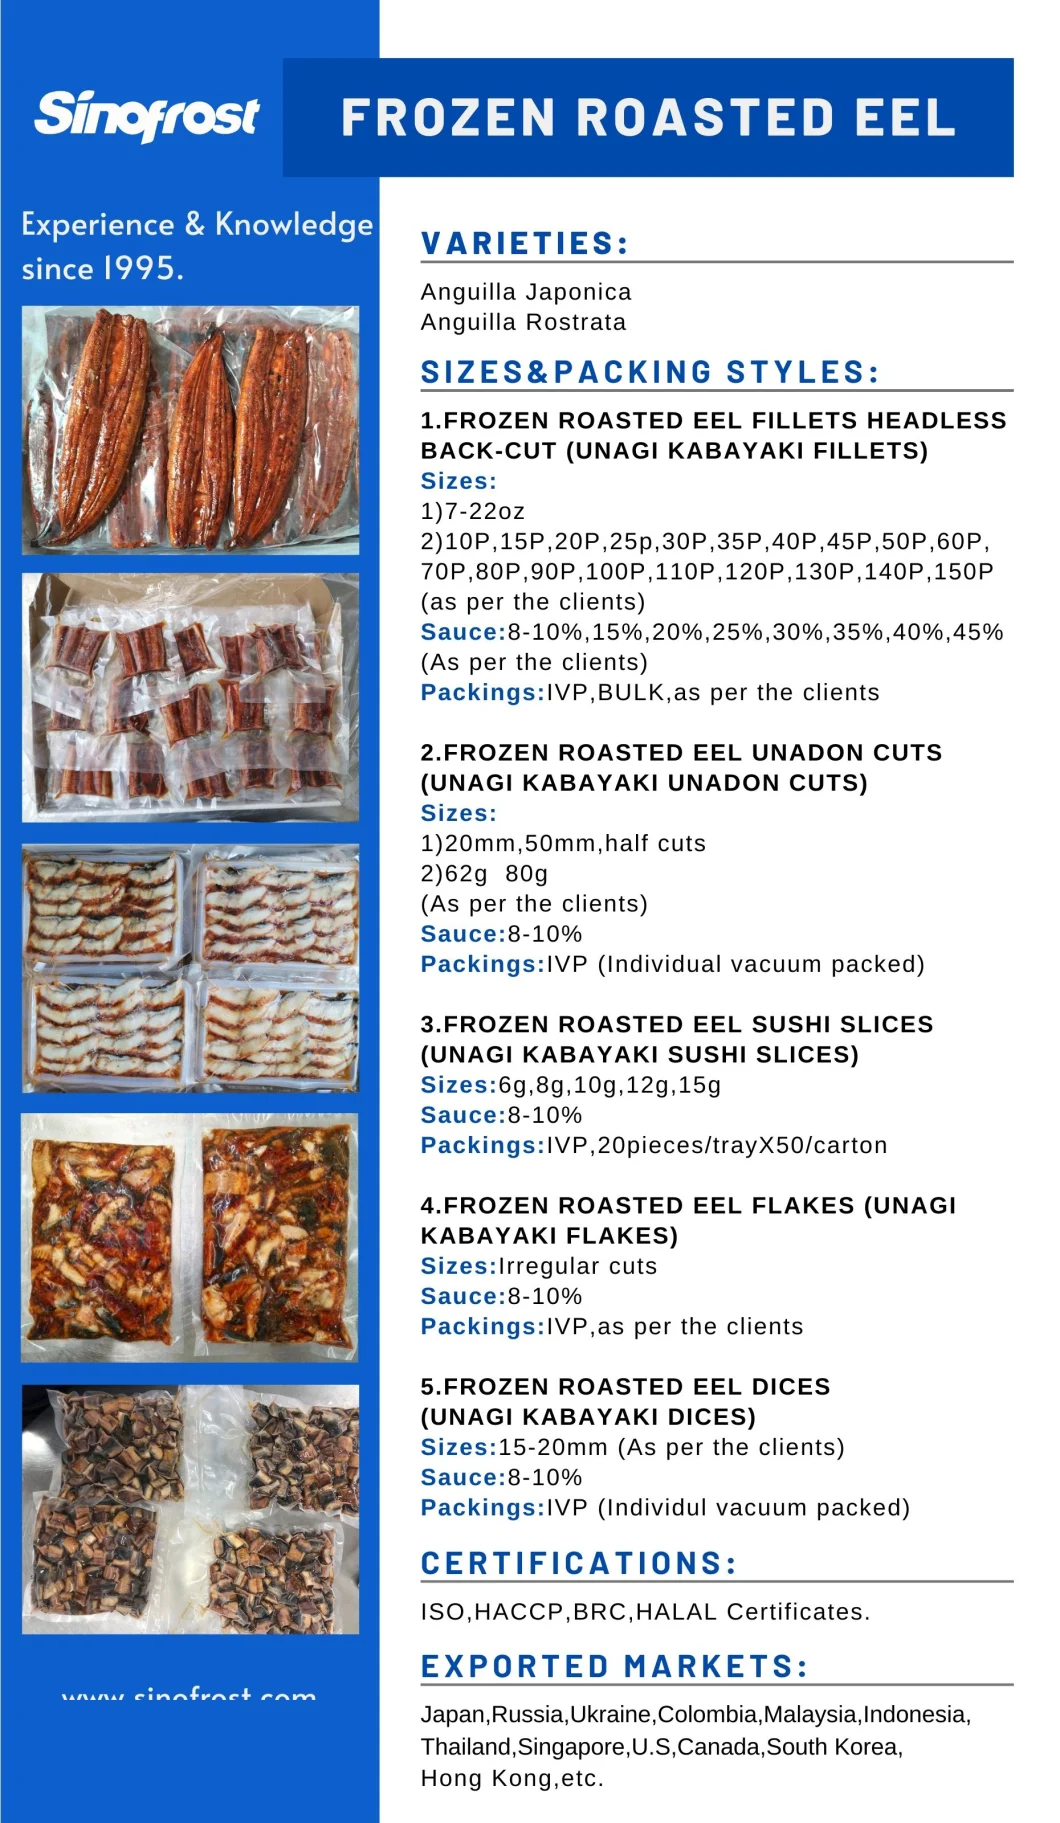 Anguilla Japonica Variety Frozen Roasted Eel, Unagi Kabayaki, Frozen Prepared Eel, Frozen Broiled Eel, Frozen Grilled Eel, Smoked Eel, Packed in Bulk/Vacuum Bag